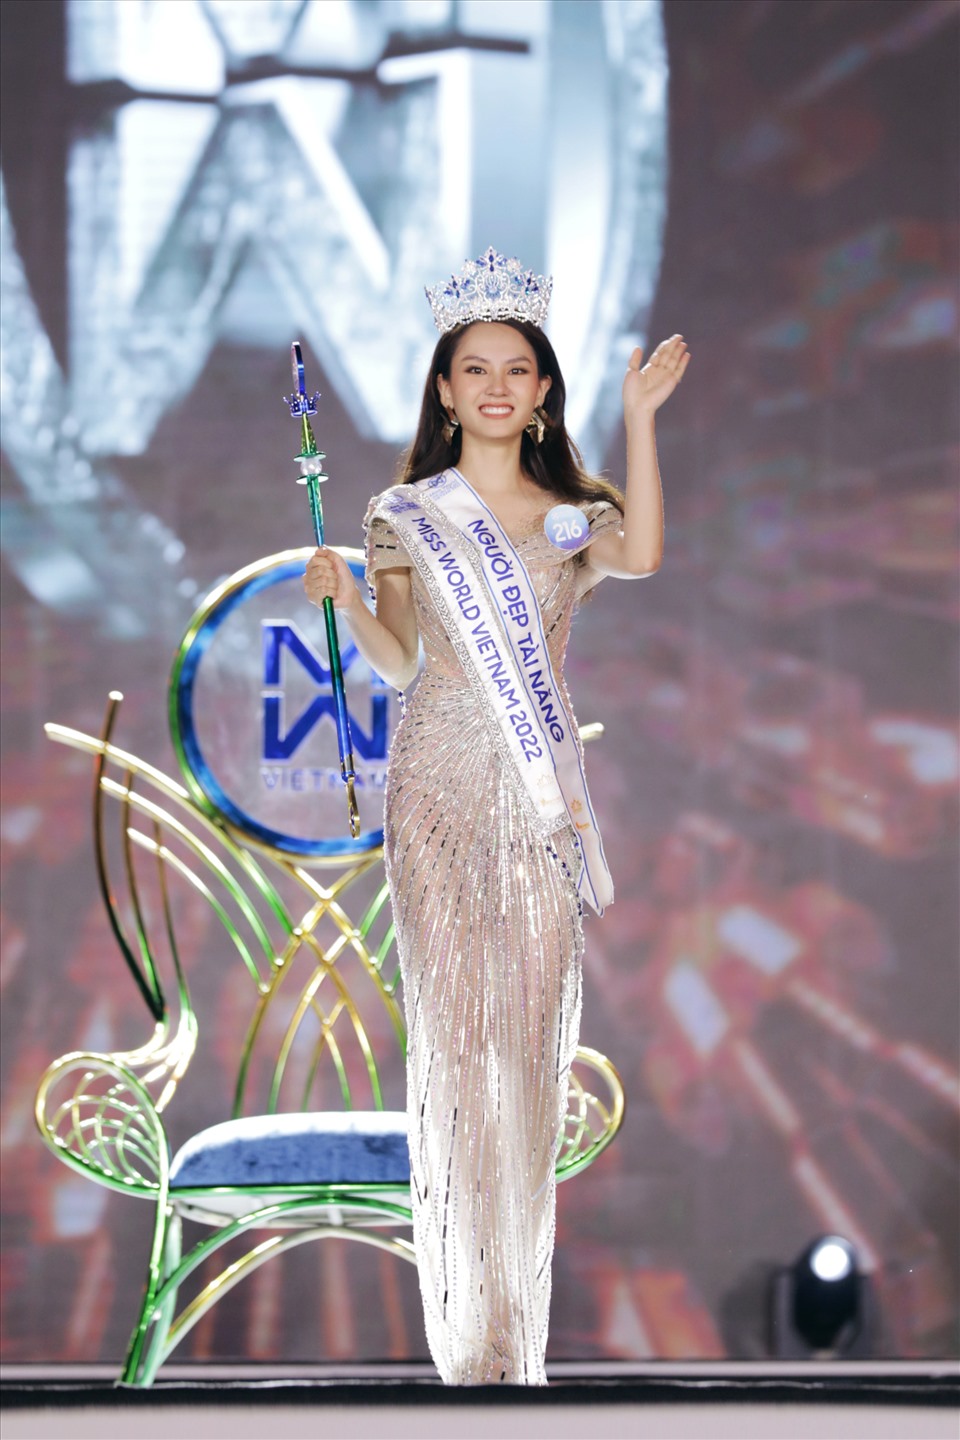 Hoa hậu Mai Phương sinh năm 1999, đến từ Đồng Nai. Ngay từ đầu cuộc thi cô đã gây được ấn tượng vì từng lọt top 5 Hoa hậu Việt Nam 2022. Trong đêm chung kết cô cũng là một trong những thí sinh thể hiện tốt ở tất cả các phần thi, đặc biệt là thi ứng xử. Ảnh: MWVN.